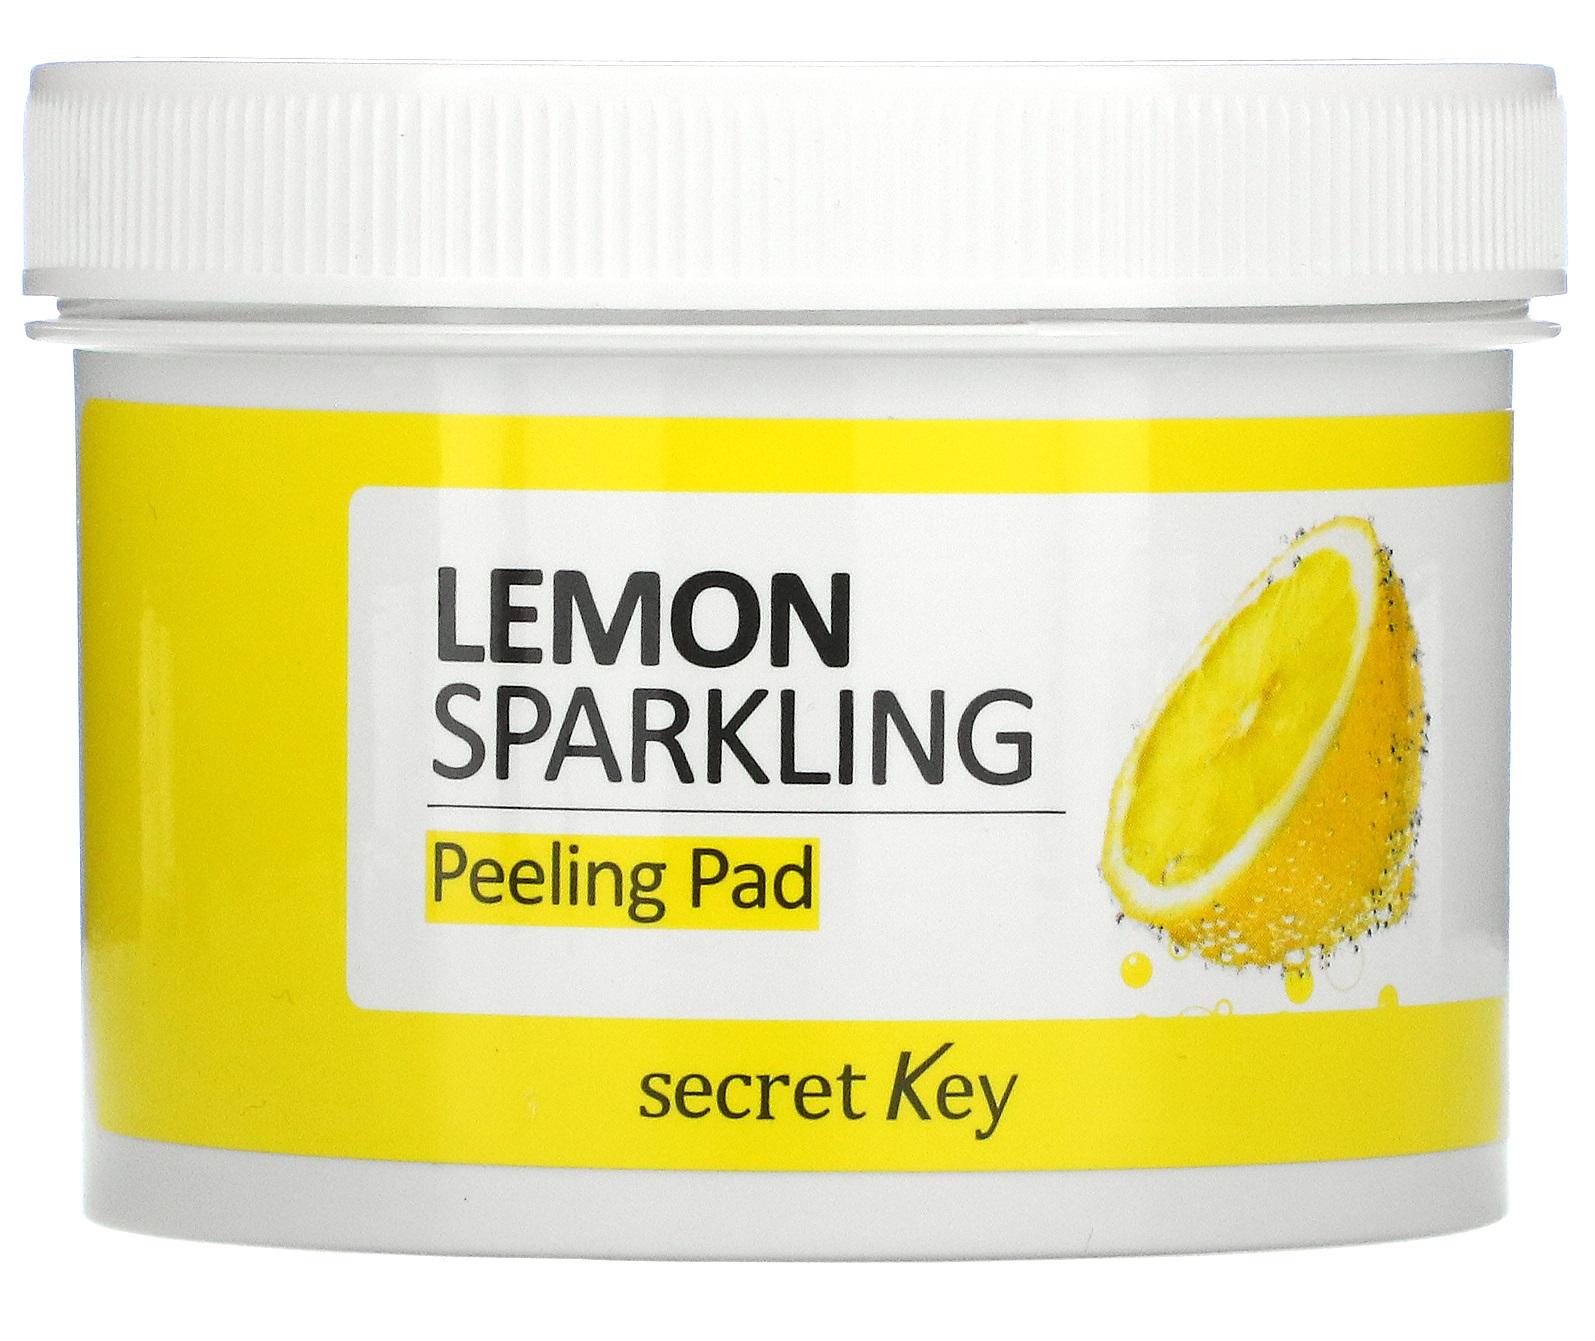 Secret Key Lemon sparkling peeling pad